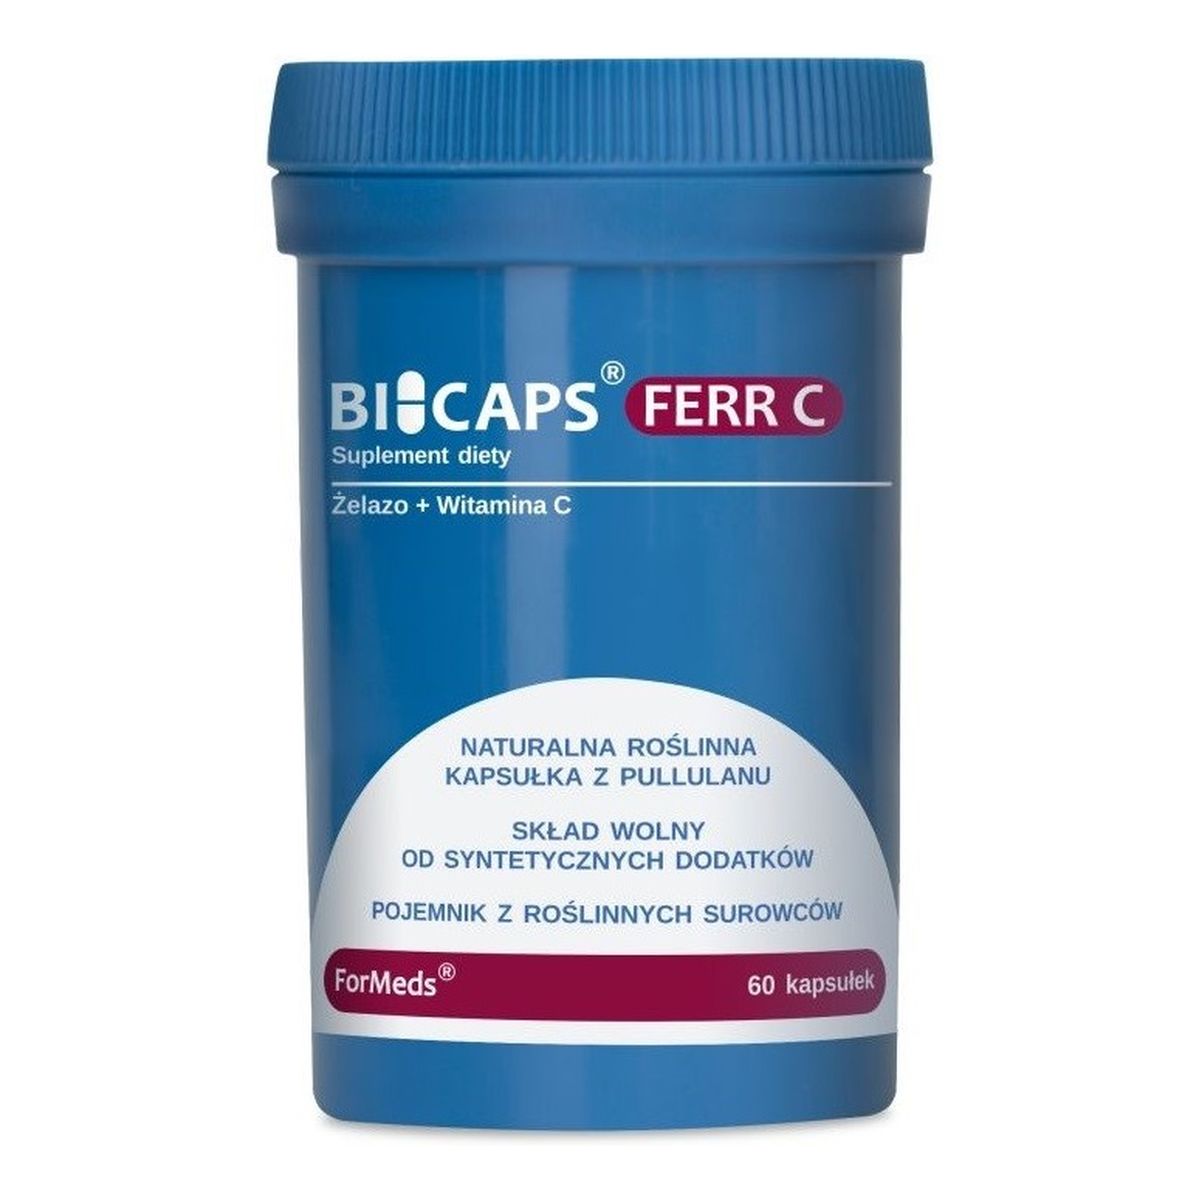 Formeds Bicaps ferr-c witamina c suplement diety 60 kapsułek